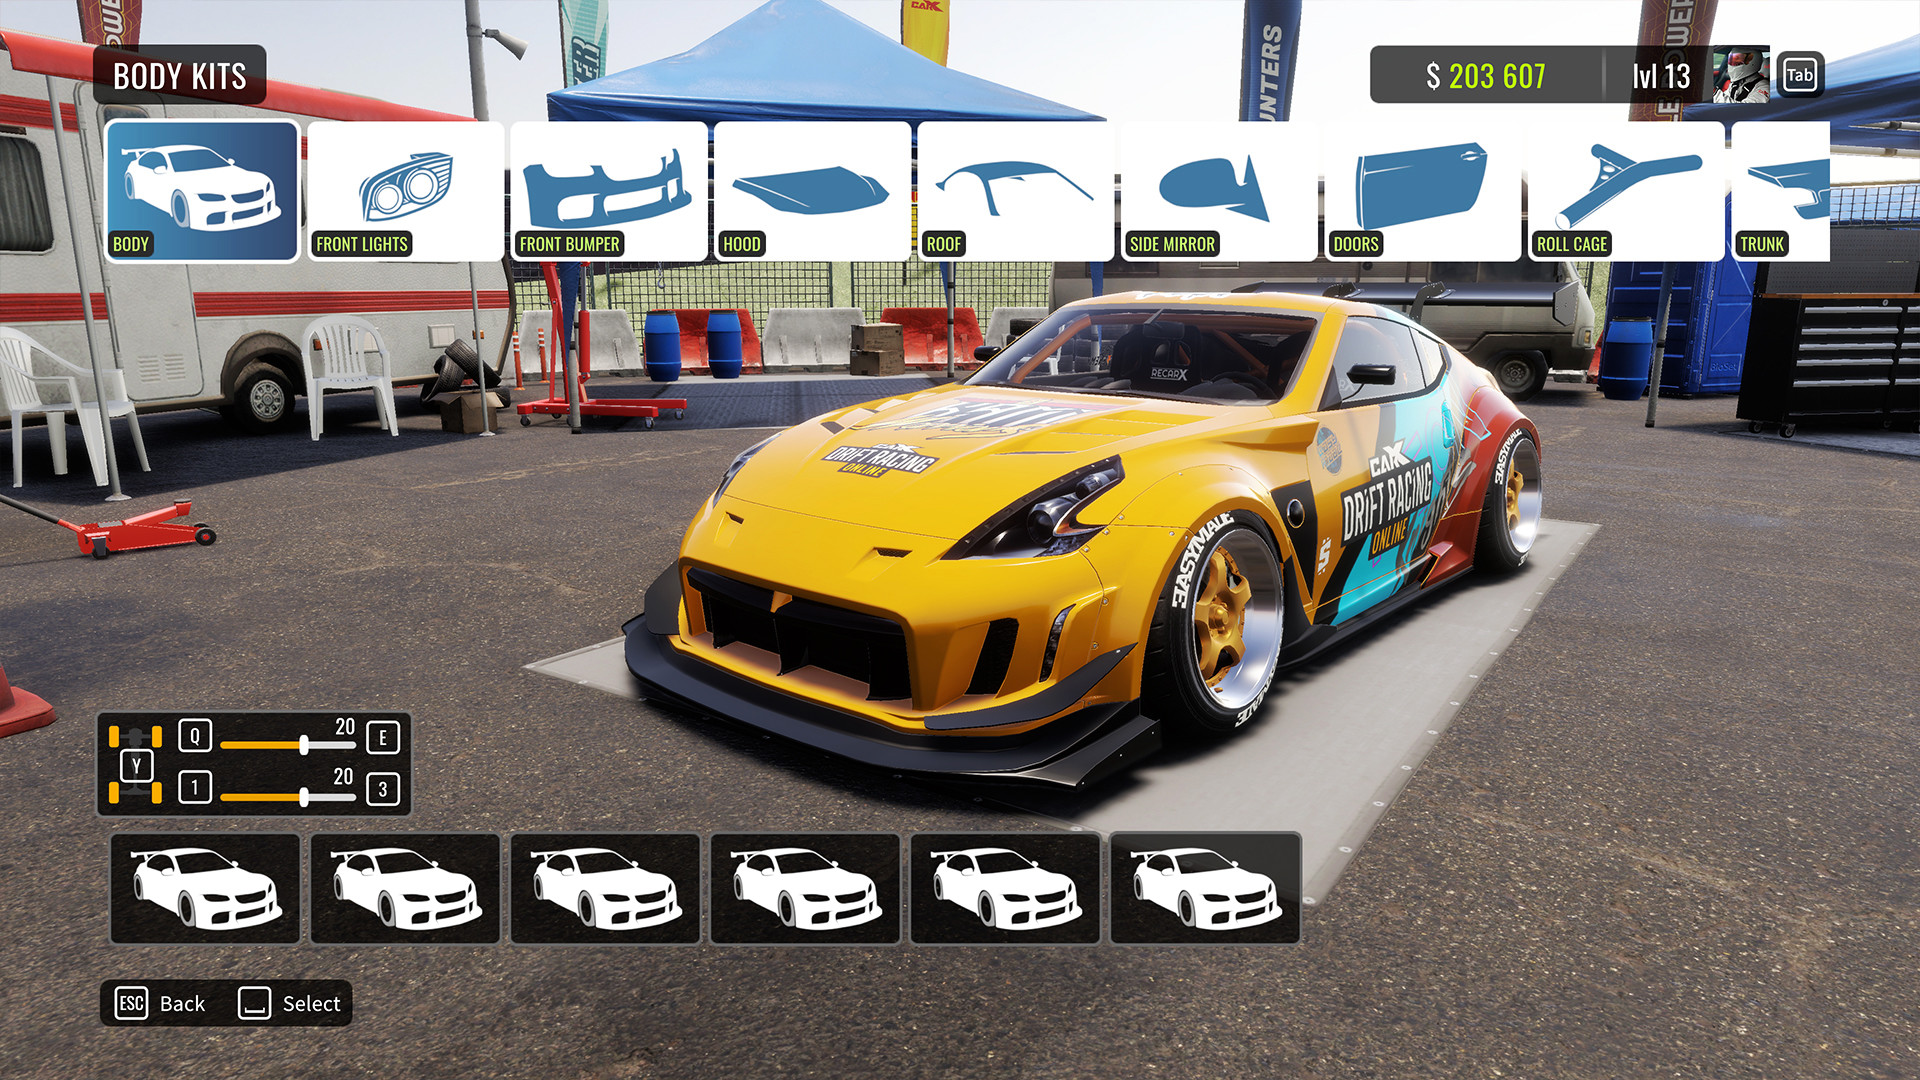 CarX Drift Racing Online en Steam